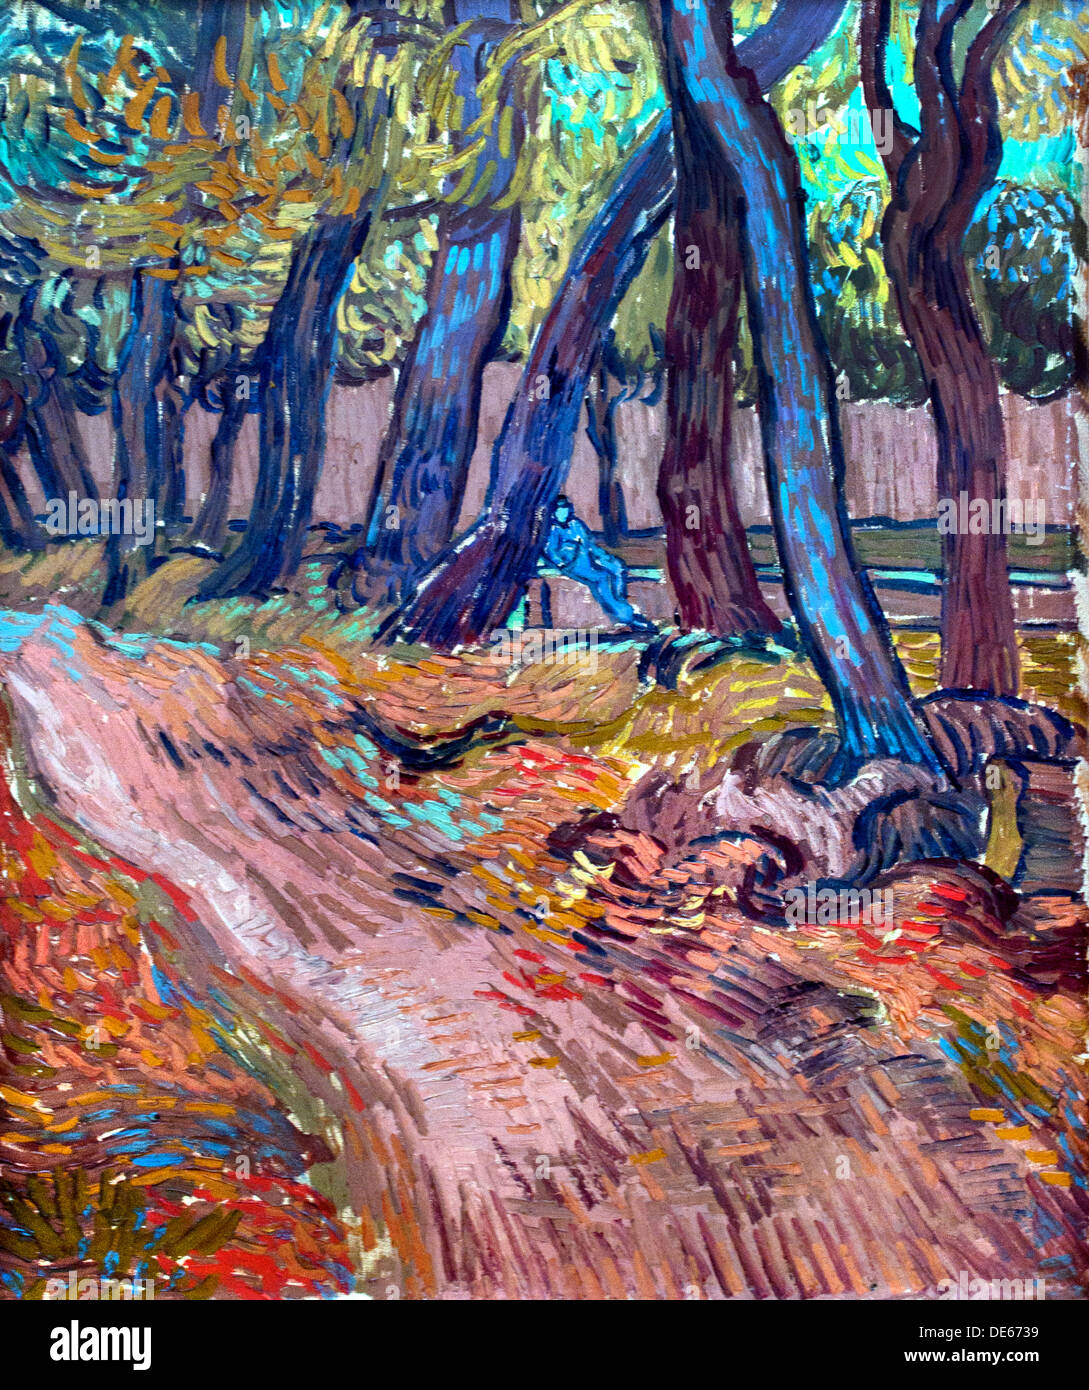 Chemin dans le jardin de l'asile Saint Remy 1889 Vincent van Gogh 1853 - 1890 Pays-Bas Néerlandais Banque D'Images